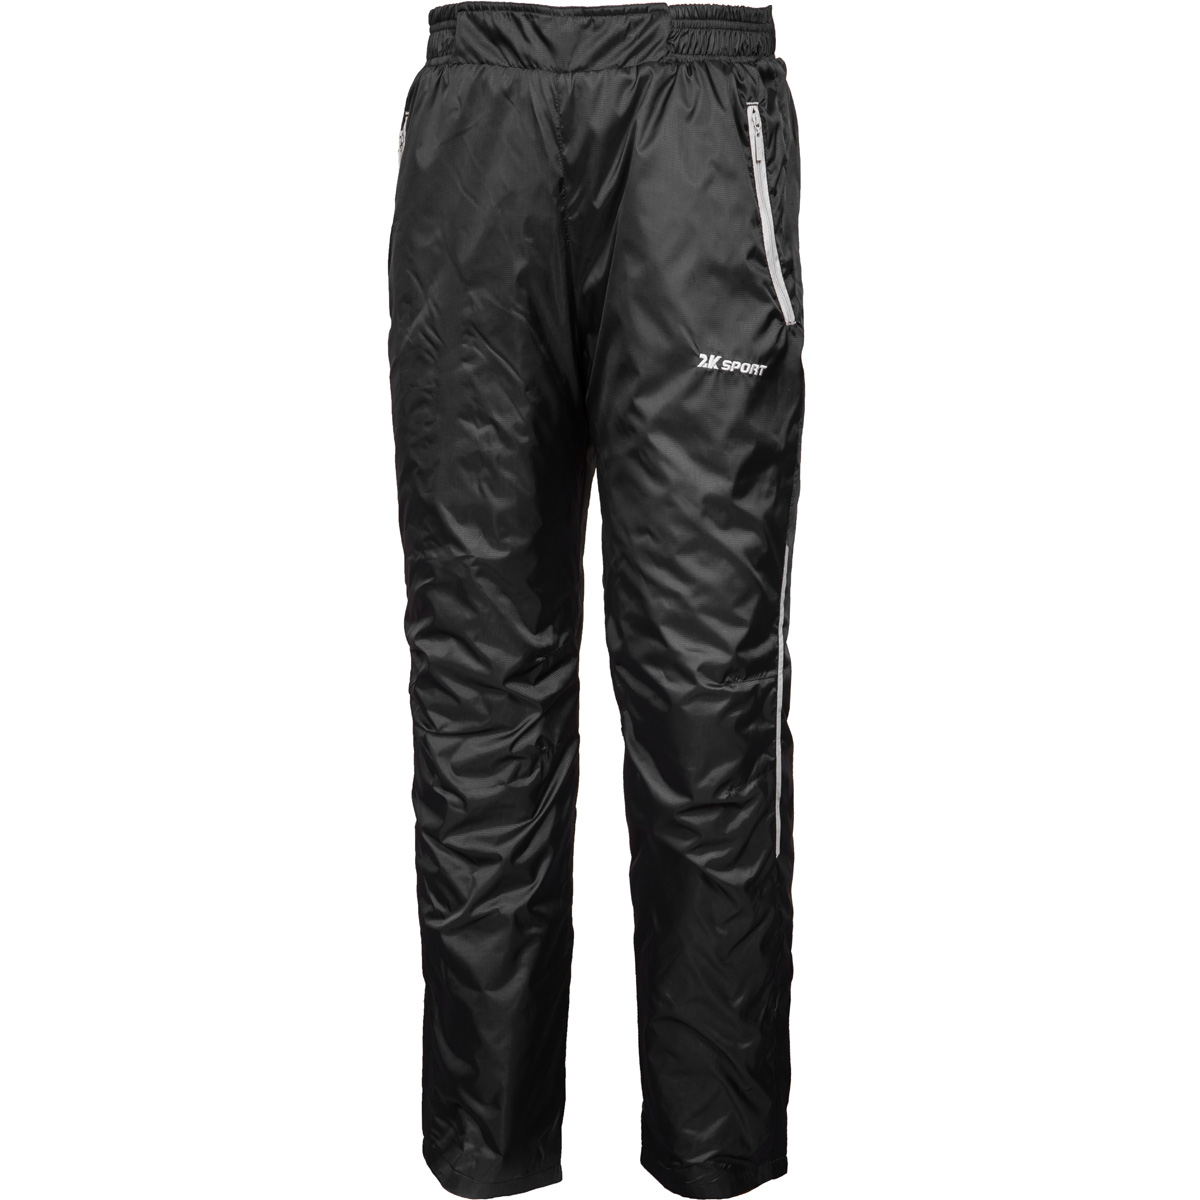 Утепленные брюки 2K Sport Futuro цвет- черный, купить Брюки винтернет-магазине 2K SHOP